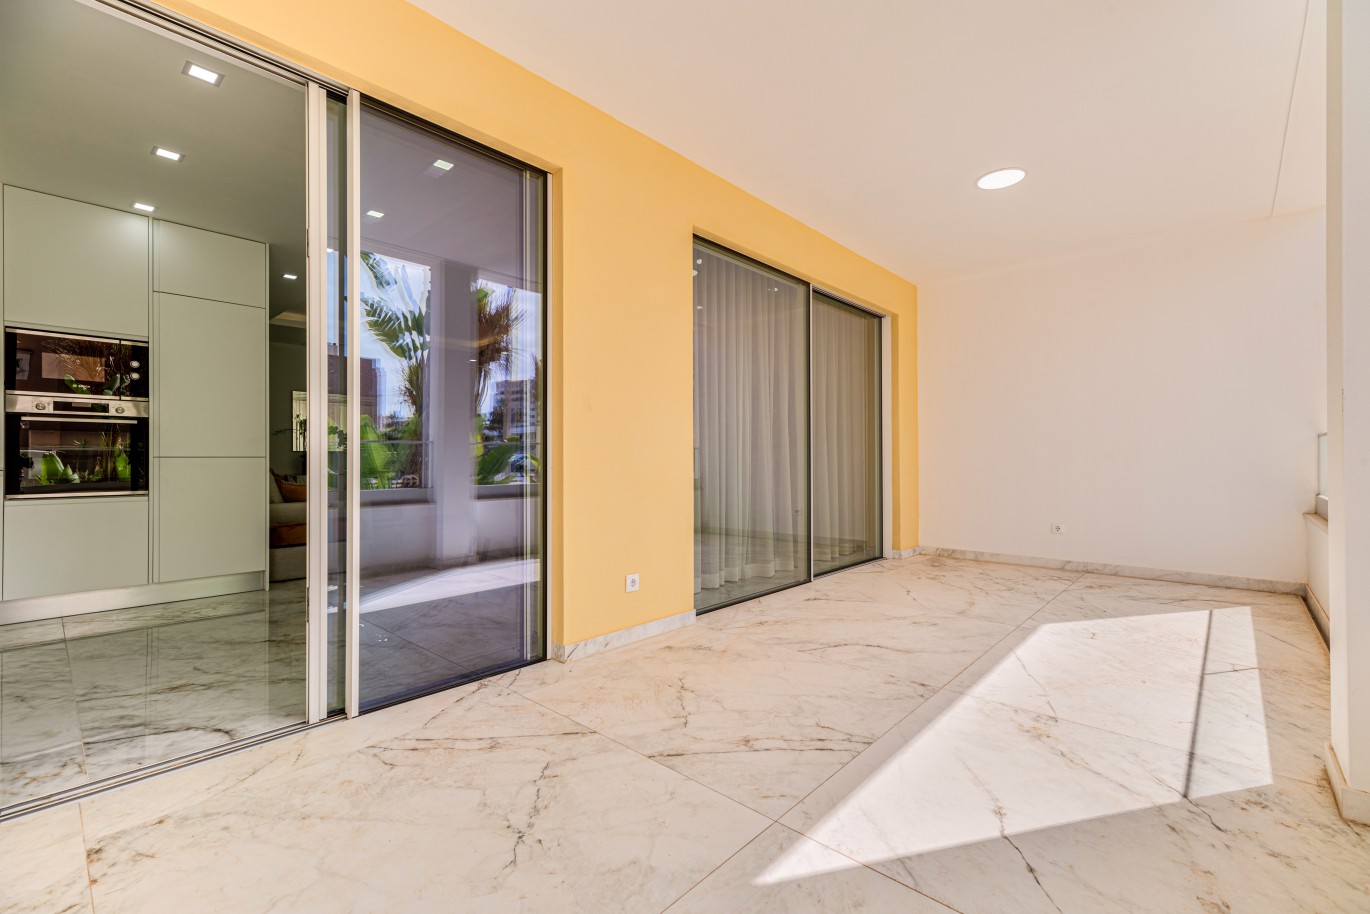 Apartamento, com terraço, para venda, em Lagos, Algarve_238563